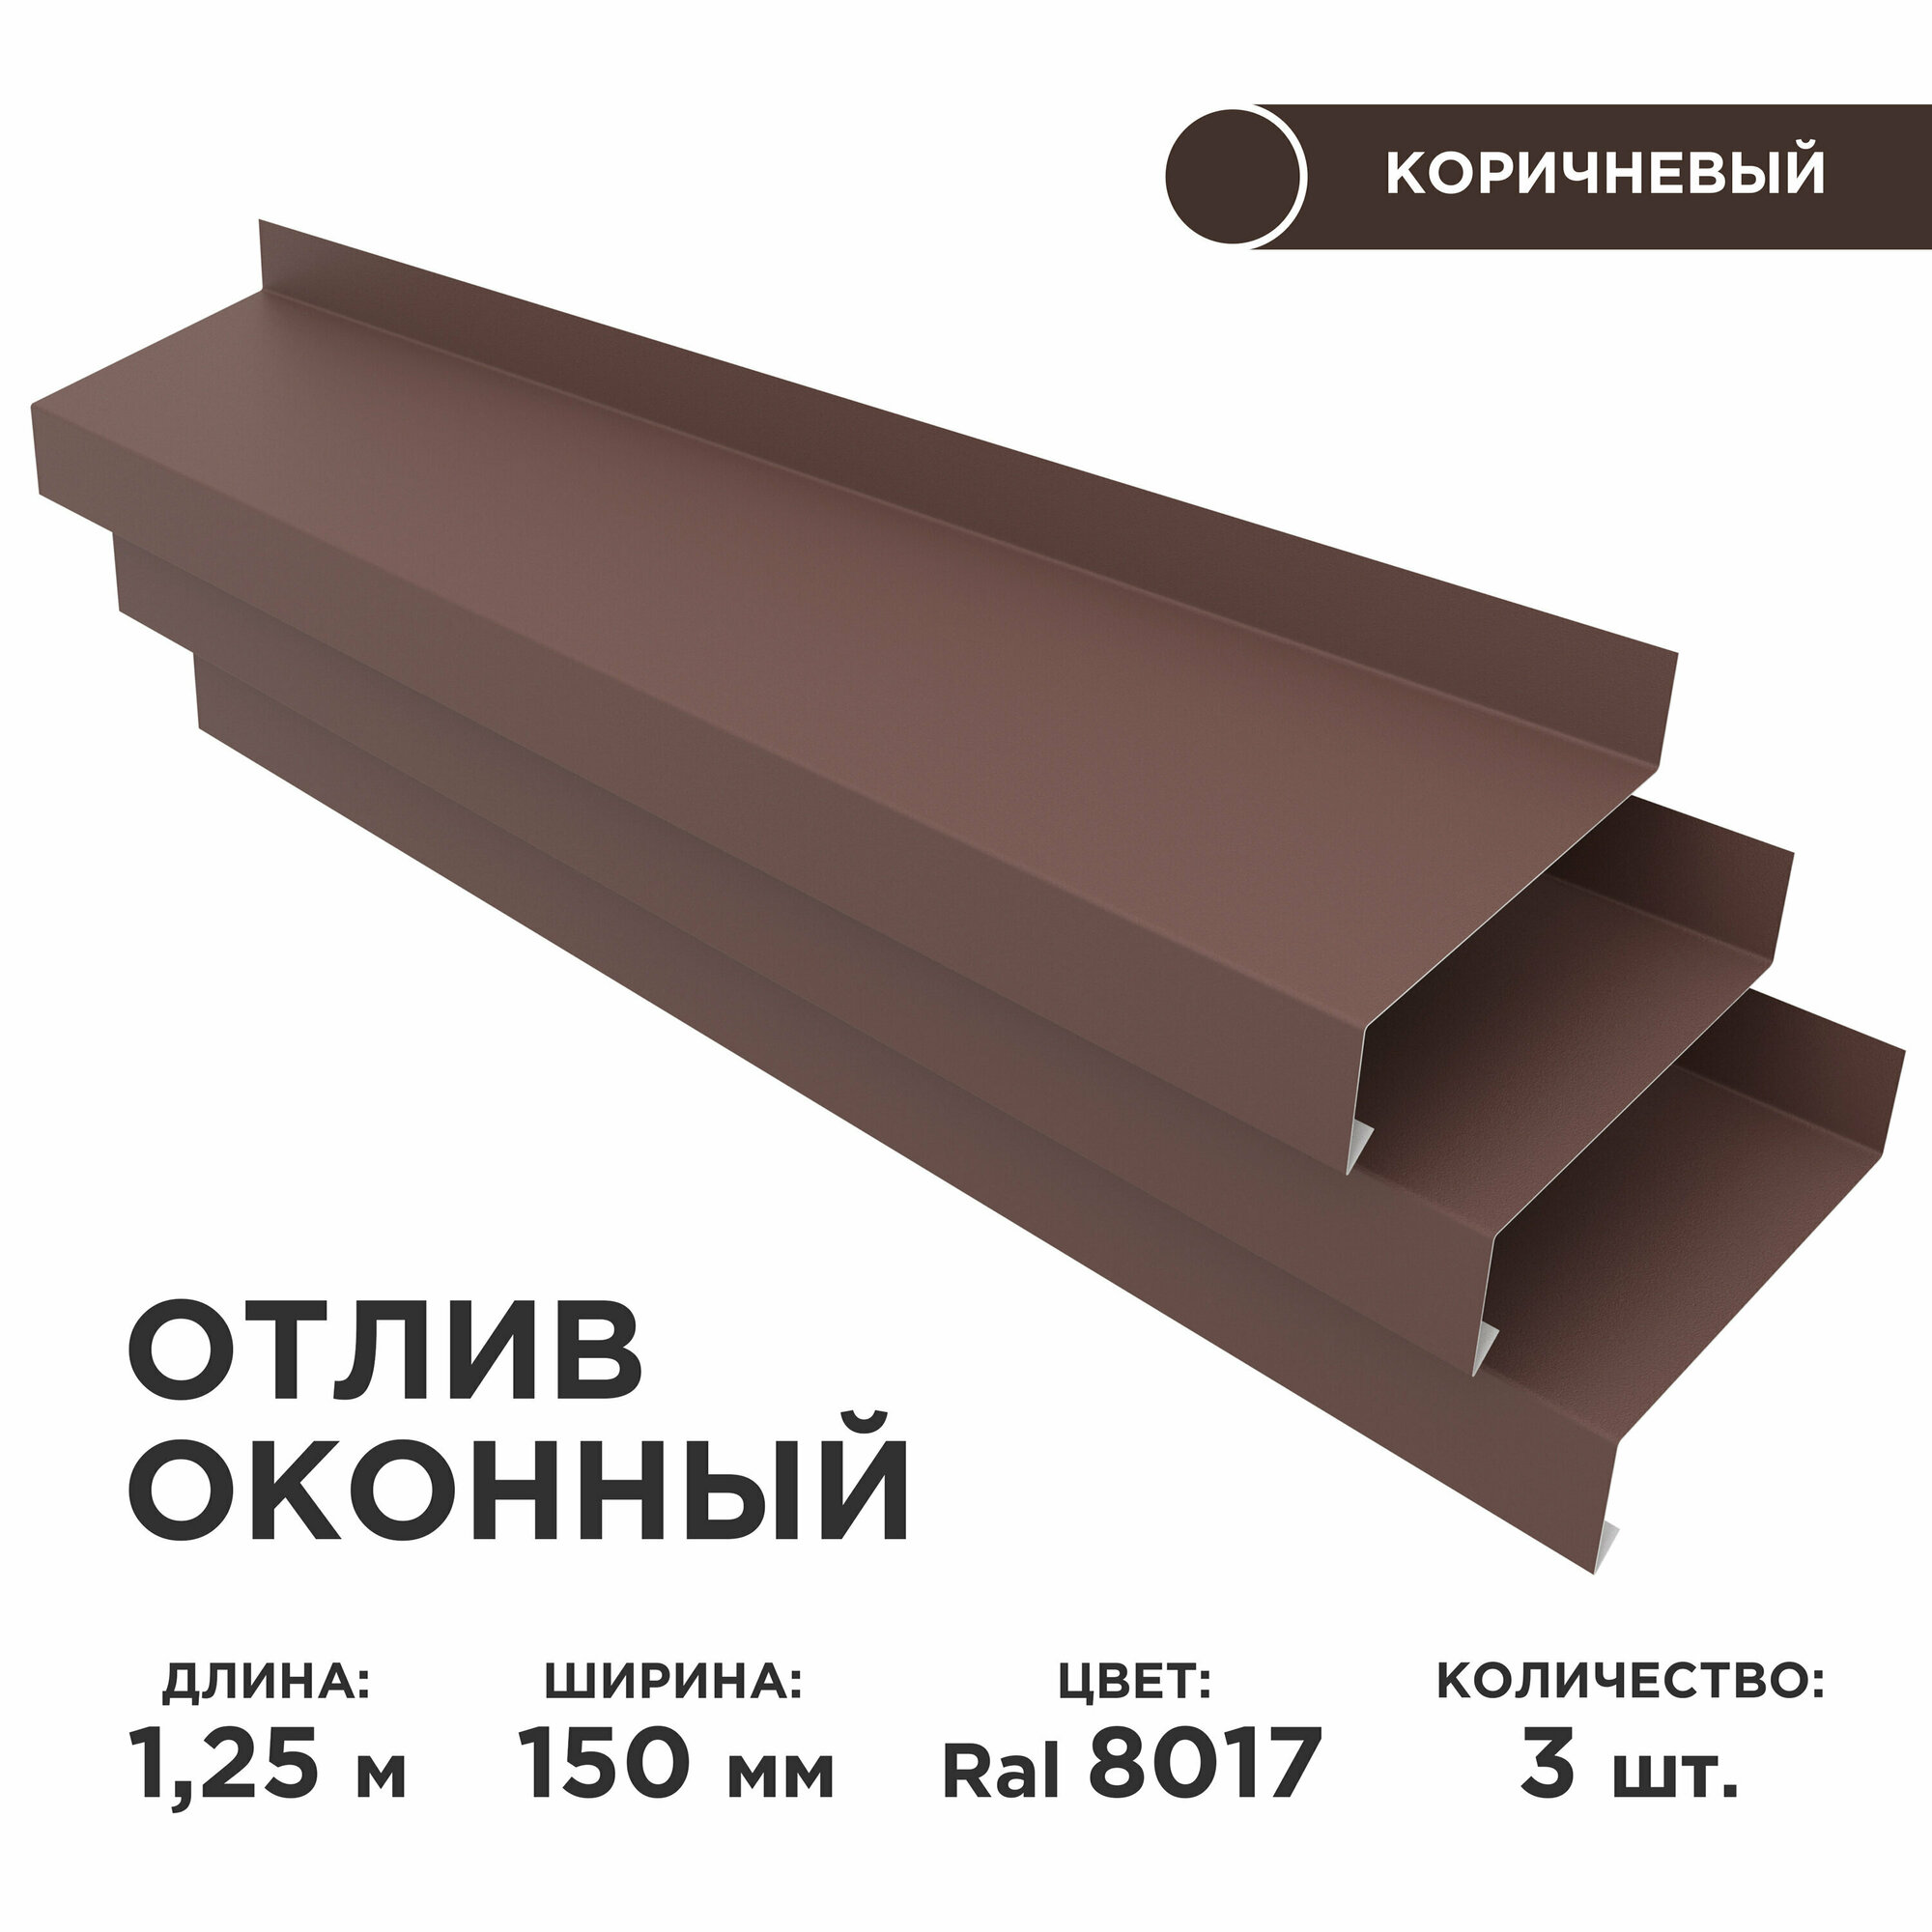 Отлив оконный ширина полки 150мм/ отлив для окна / цвет коричневый(RAL 8017) Длина 125м 3 штуки в комплекте